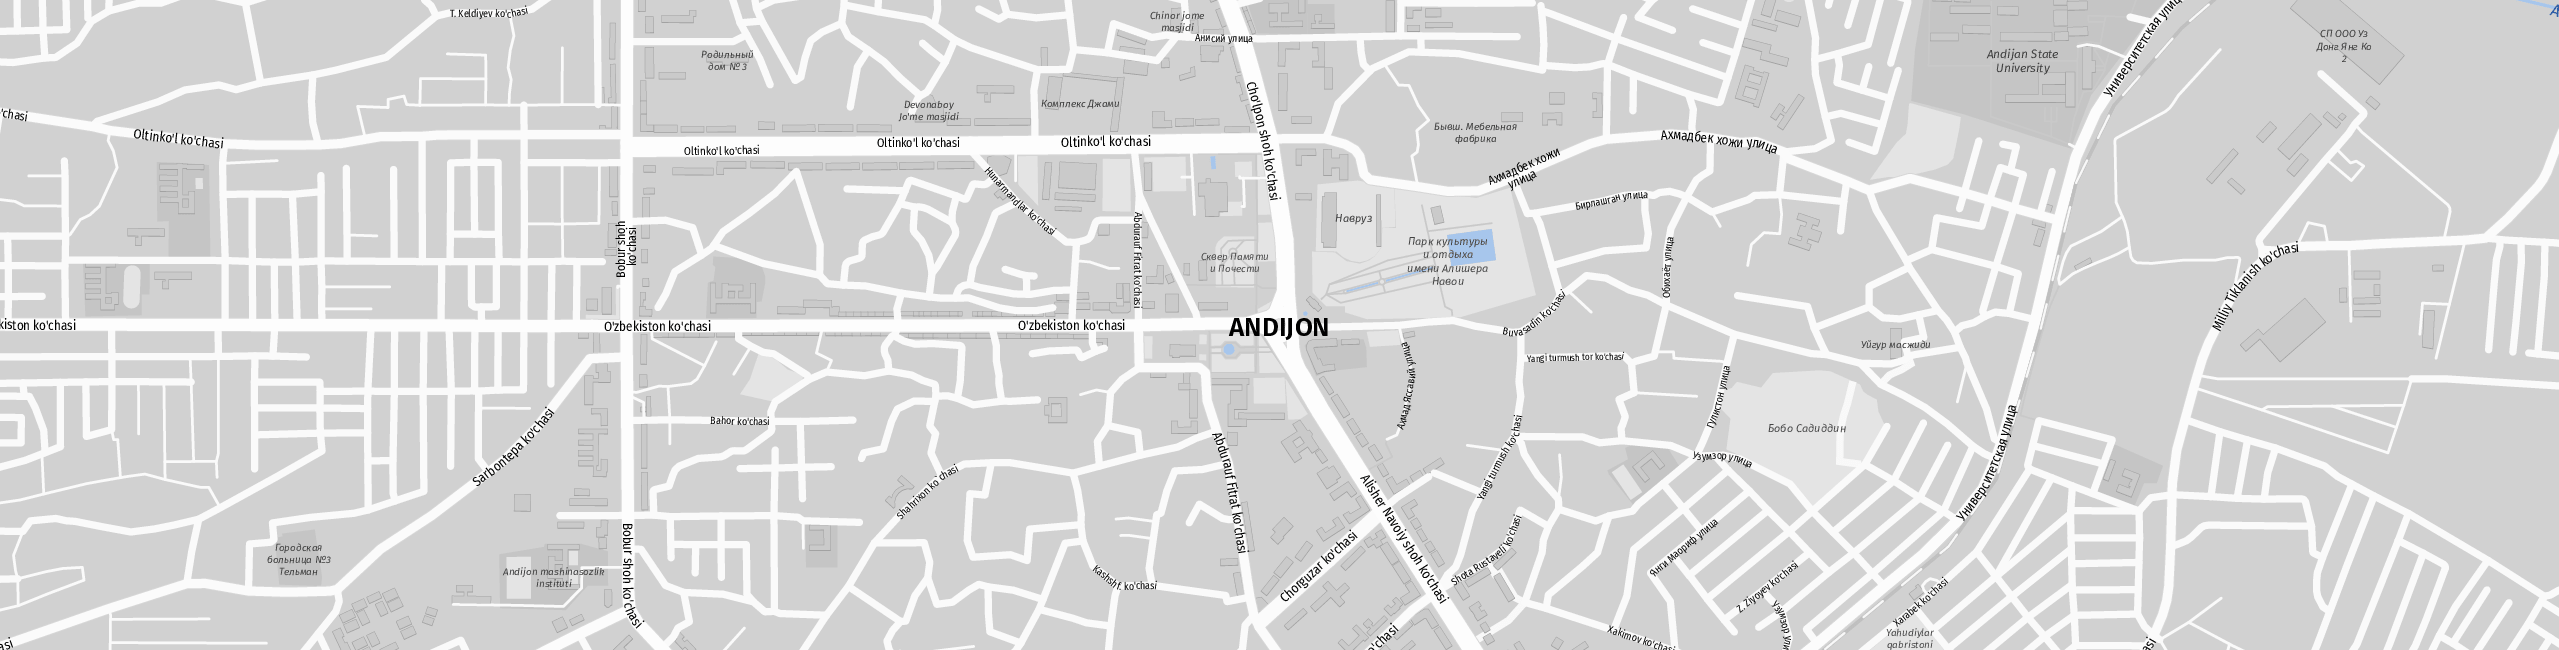 Stadtplan Andijan zum Downloaden.